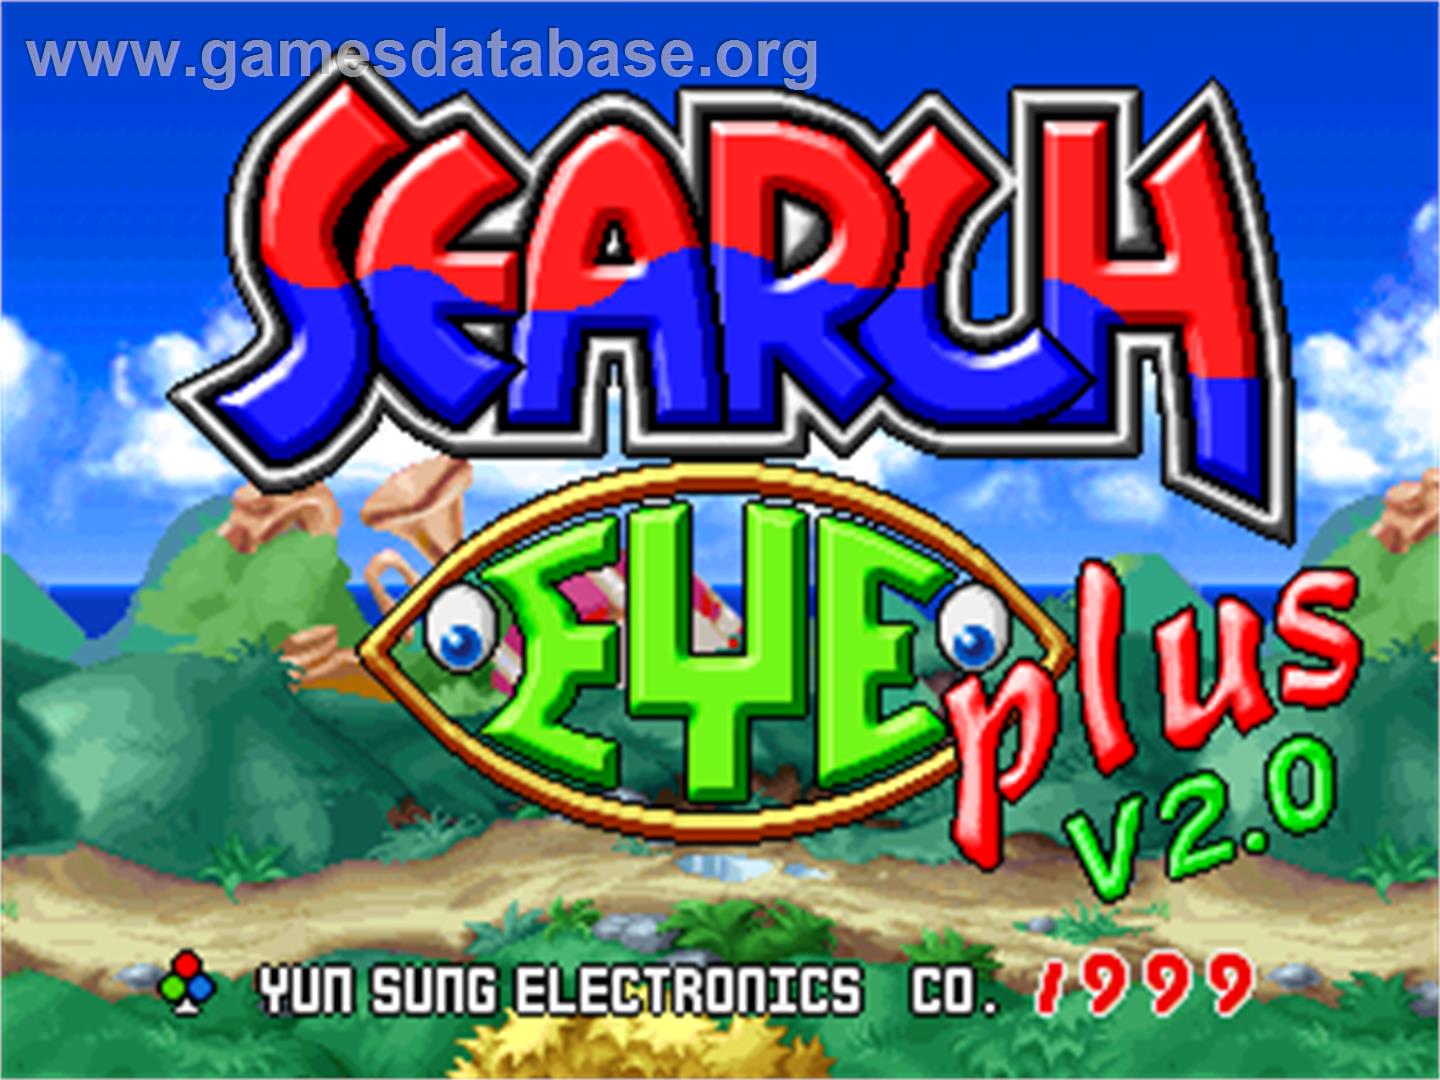 Search Eye Plus V2.0 - Arcade - Artwork - Title Screen